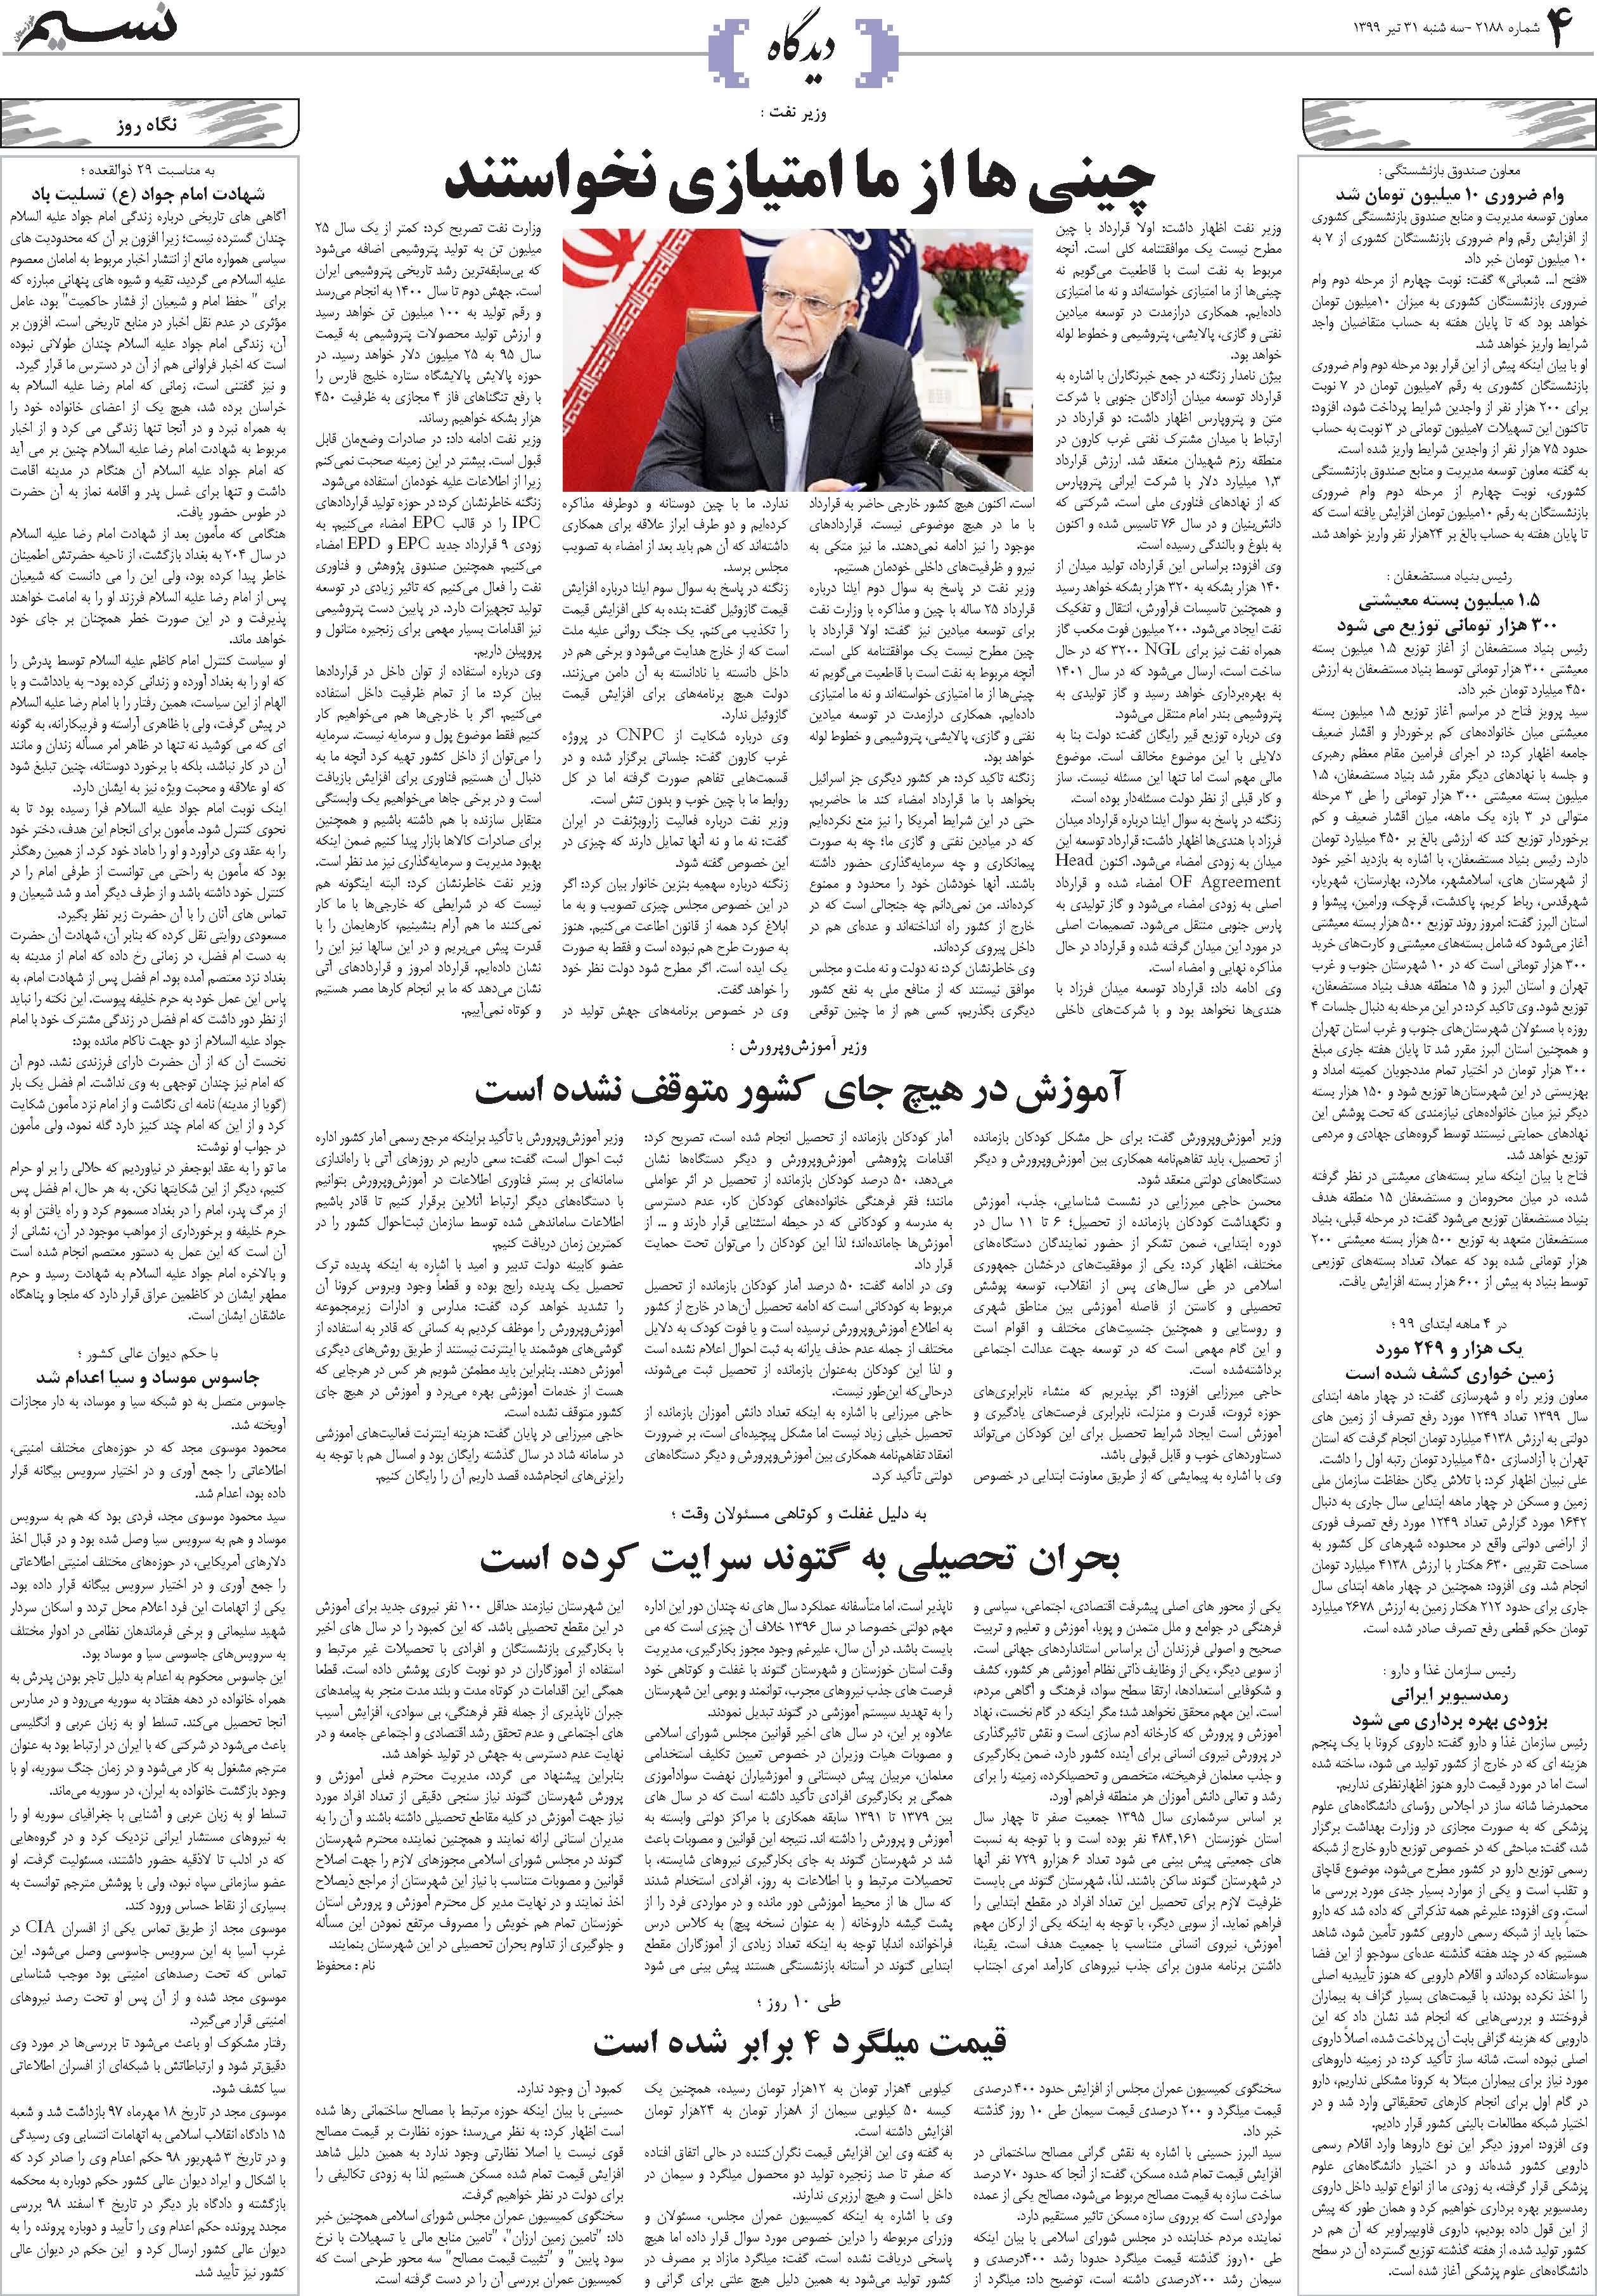 صفحه دیدگاه روزنامه نسیم شماره 2188